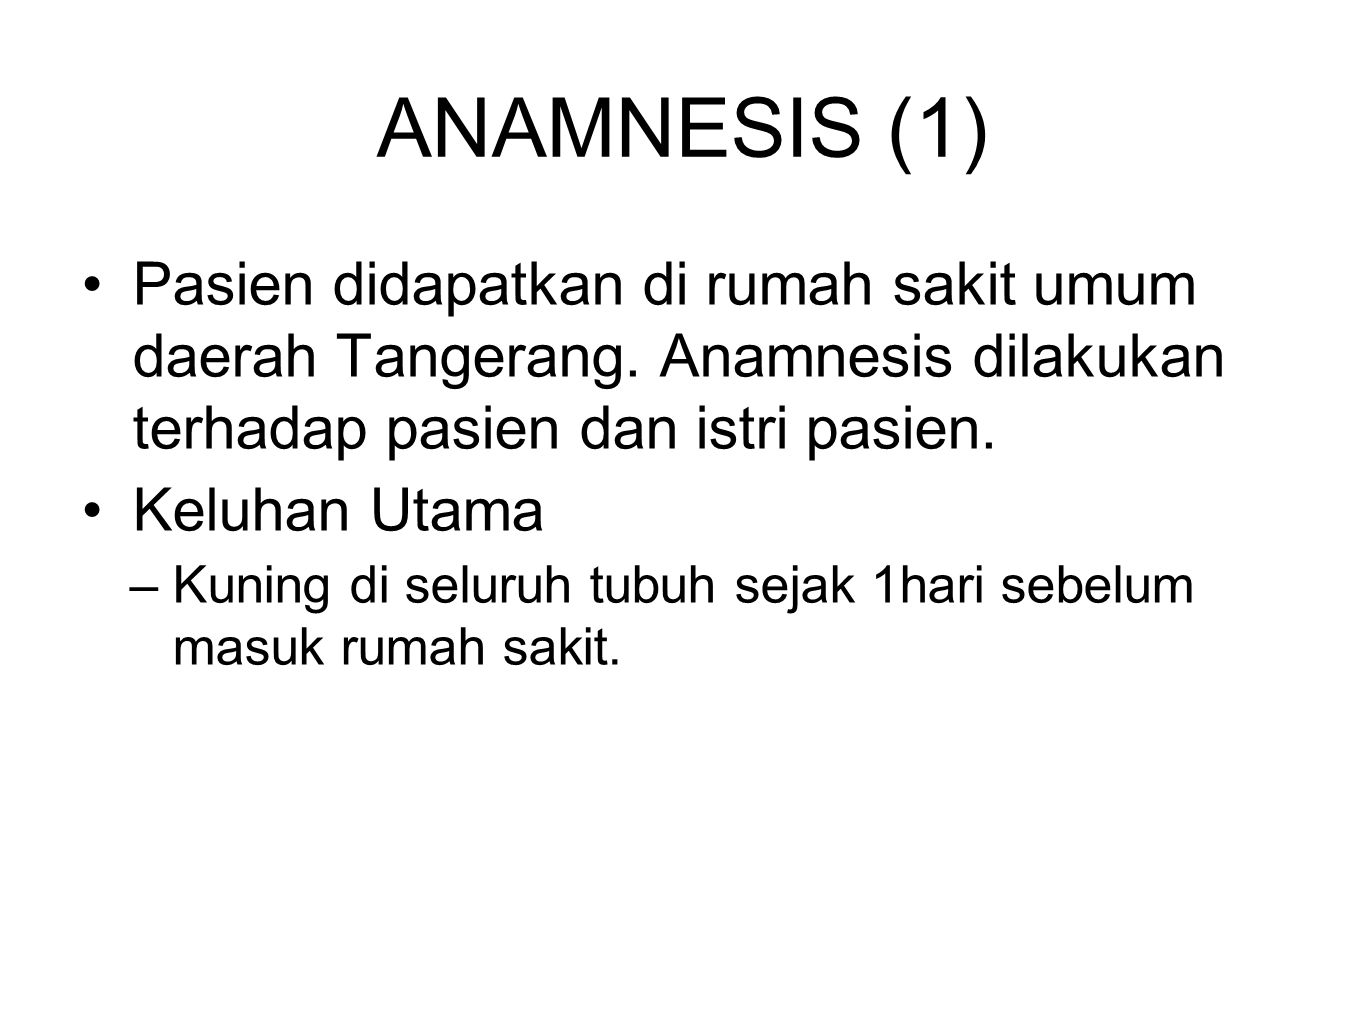 ANAMNESIS (1) Pasien didapatkan di rumah sakit umum daerah Tangerang. Anamnesis dilakukan terhadap pasien dan istri pasien.